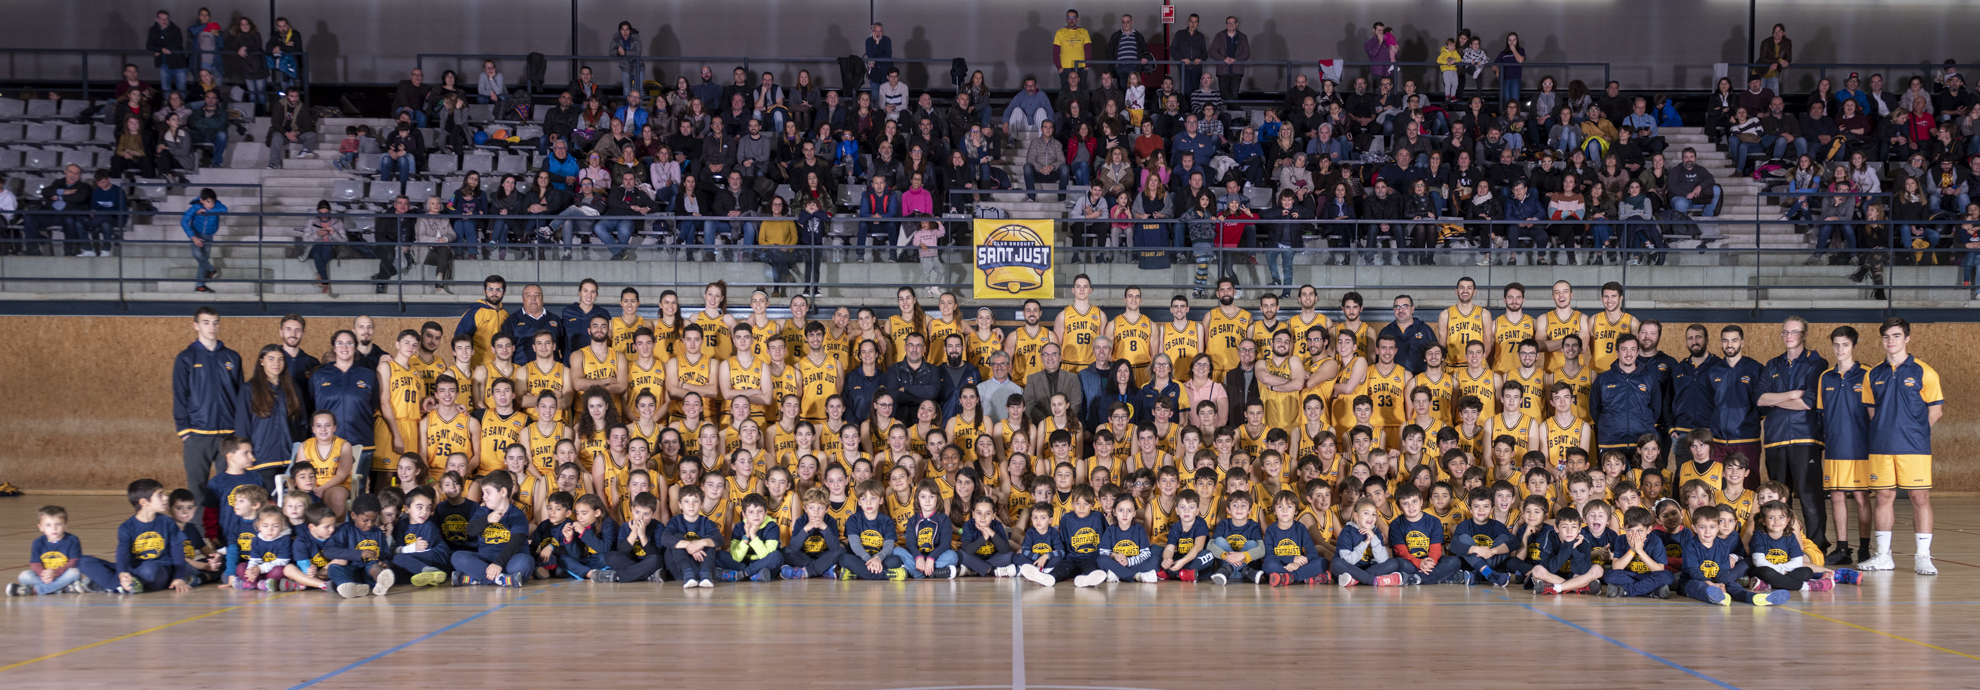 Presentació Temporada 2019-20 Club Bàsquet Sant Just